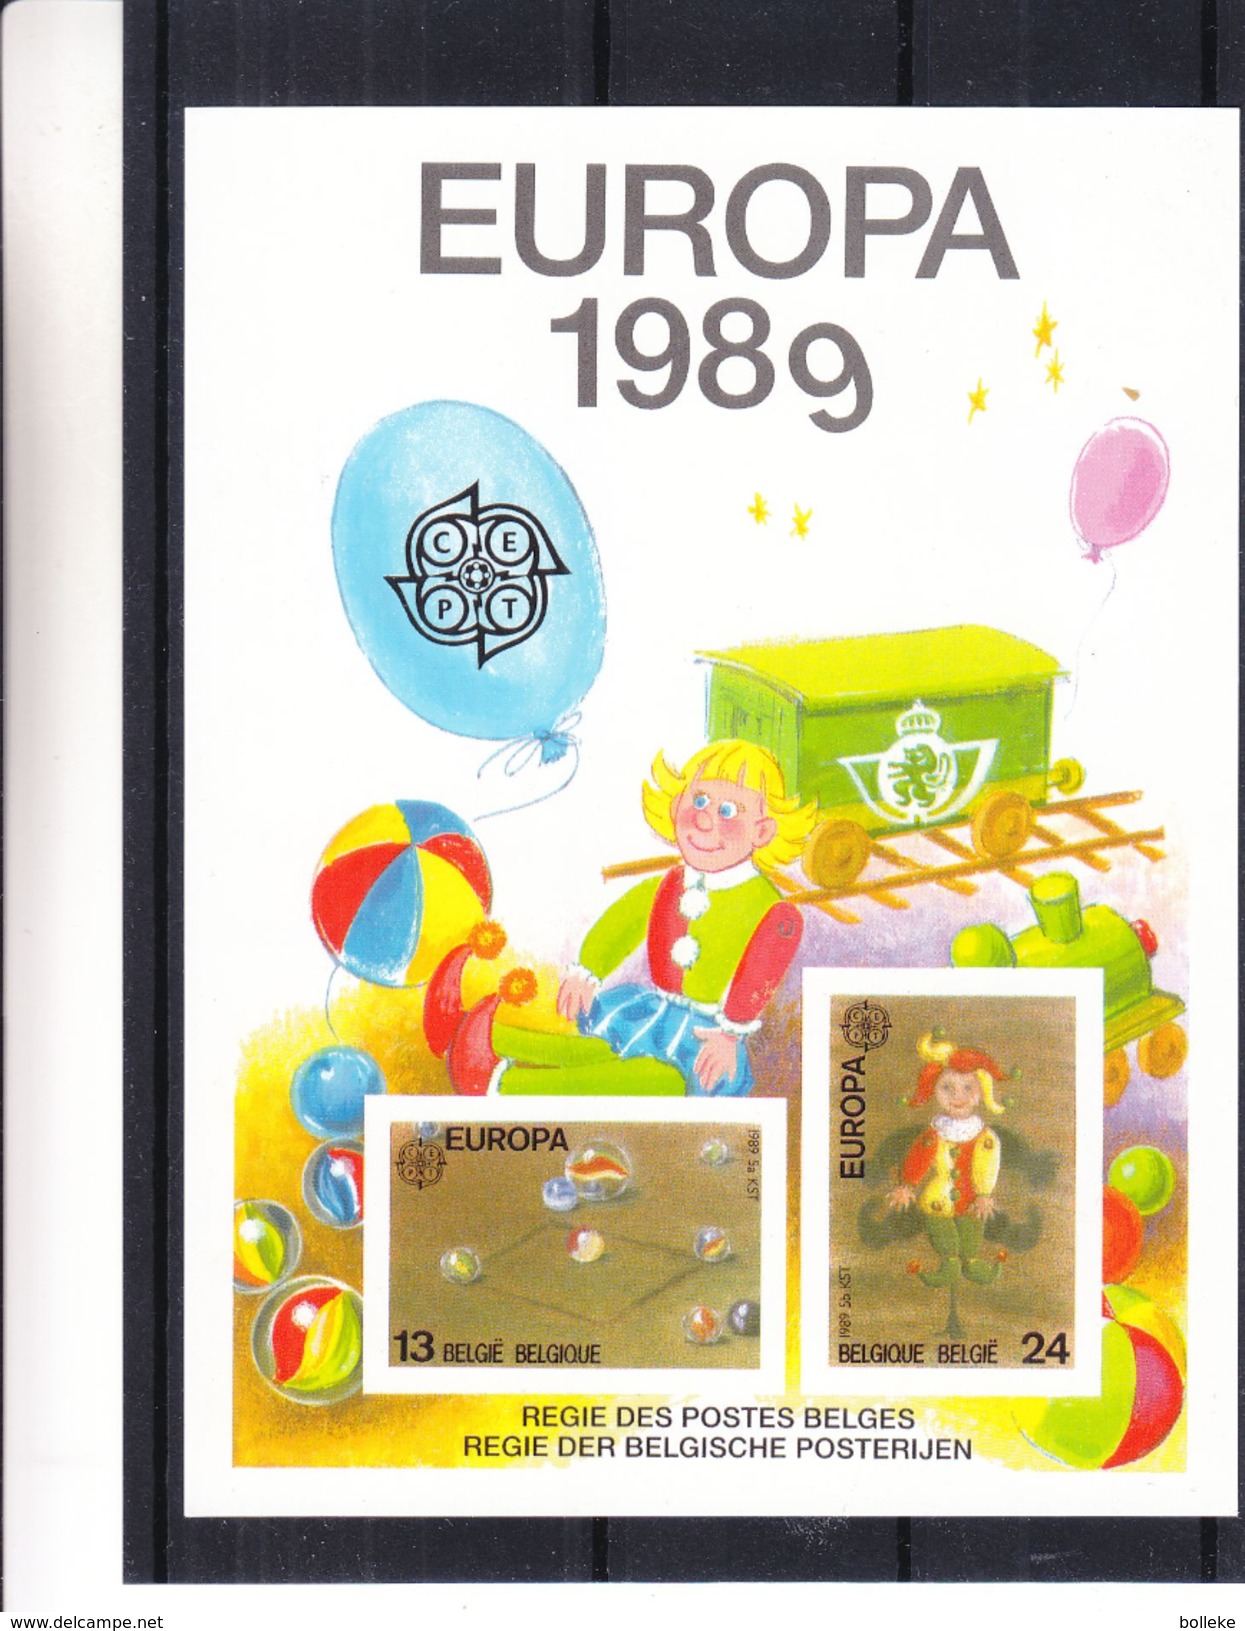 Europa 1989 - Belgique - Feuillet De Luxe De 1989 - Jeux D'enfants - Poupées - Billes - Valeur 125 Euros - Tirage Limité - 1989